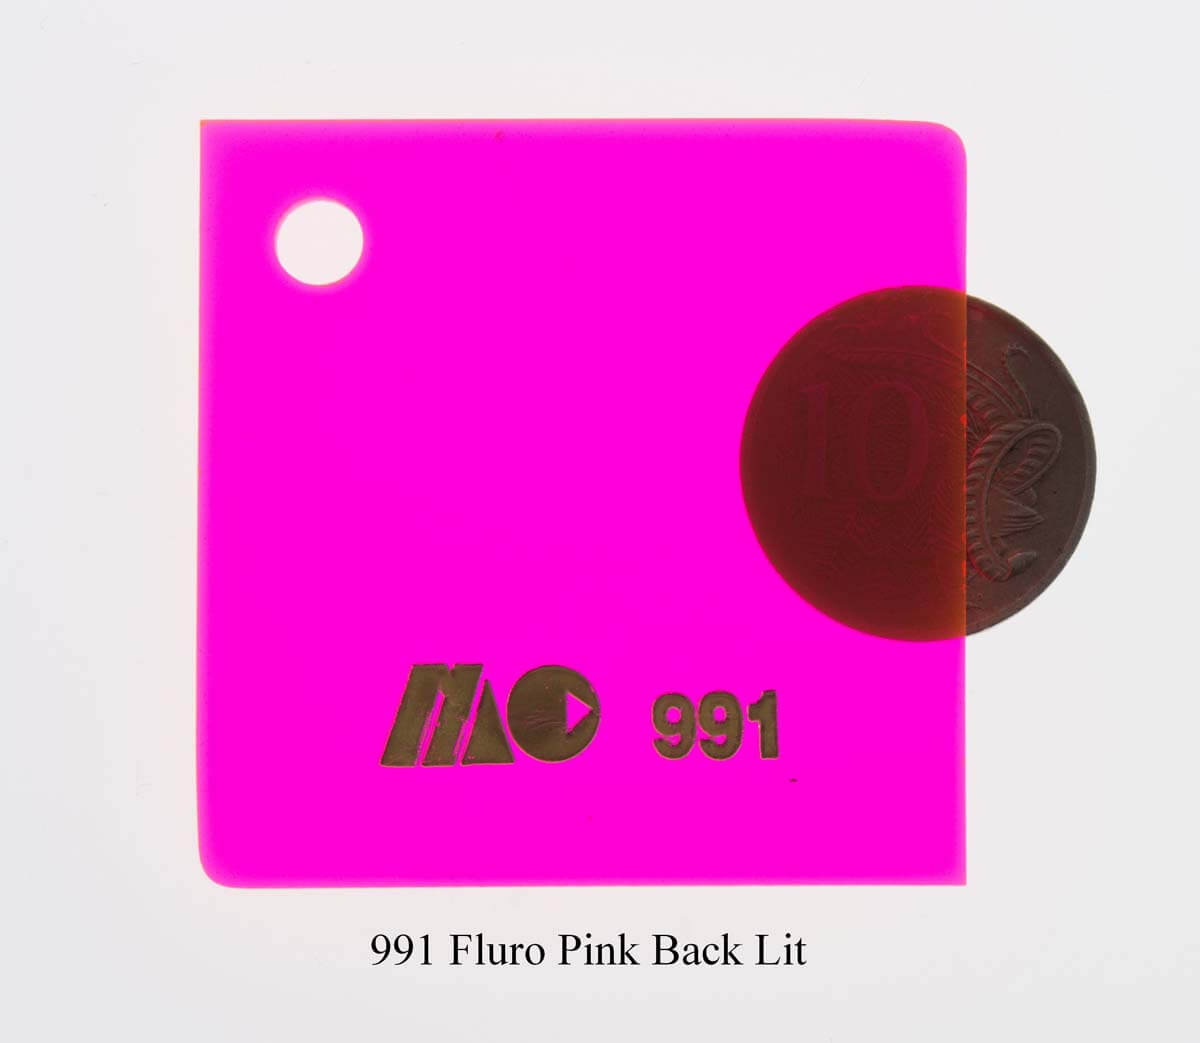 991 Fluro Pink Back Lit